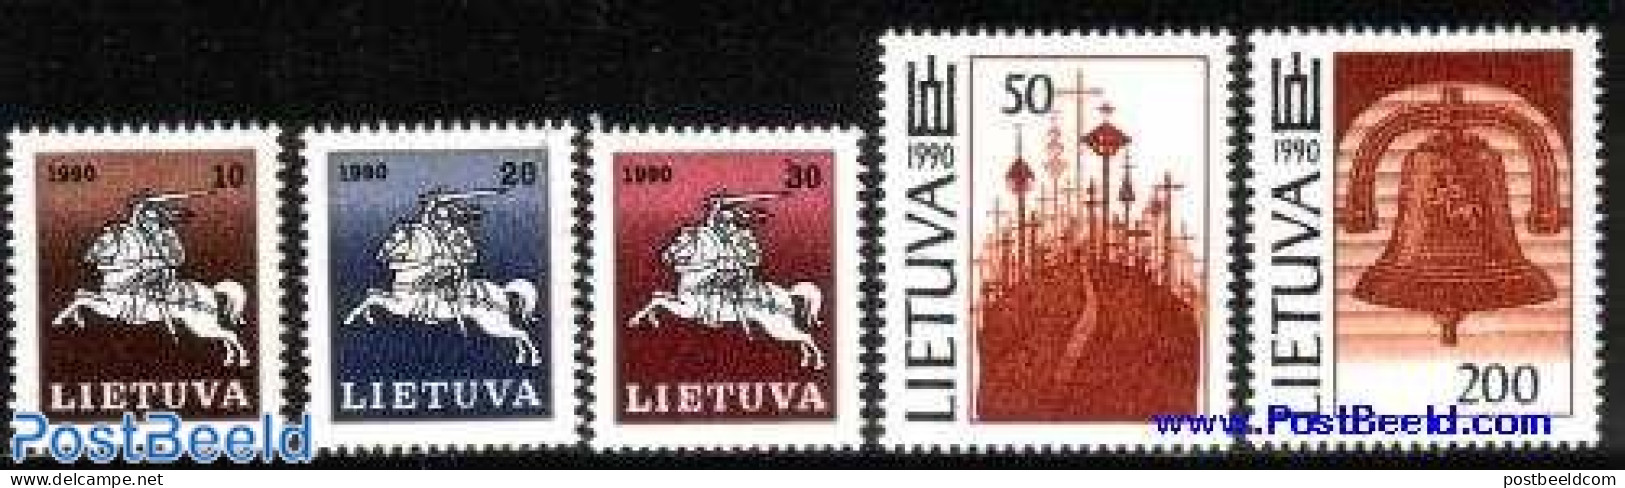 Lithuania 1991 Definitives 5v, Mint NH - Lituanie